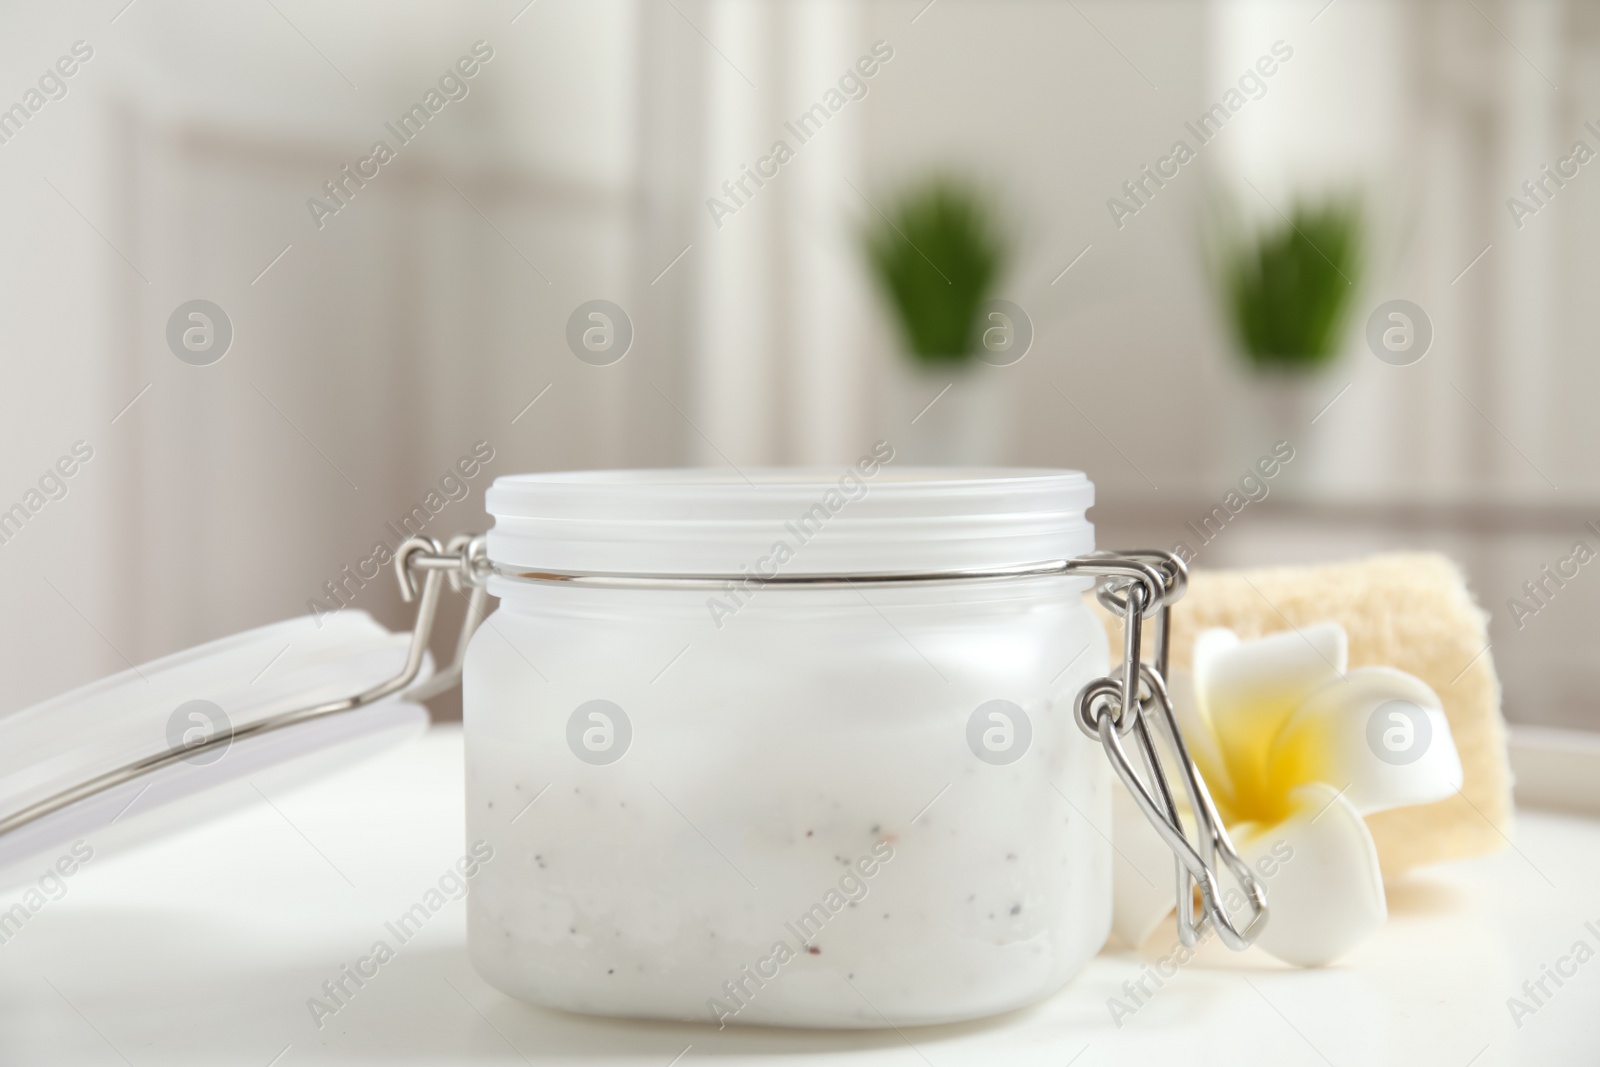 Photo of Salt scrub and plumeria on white table